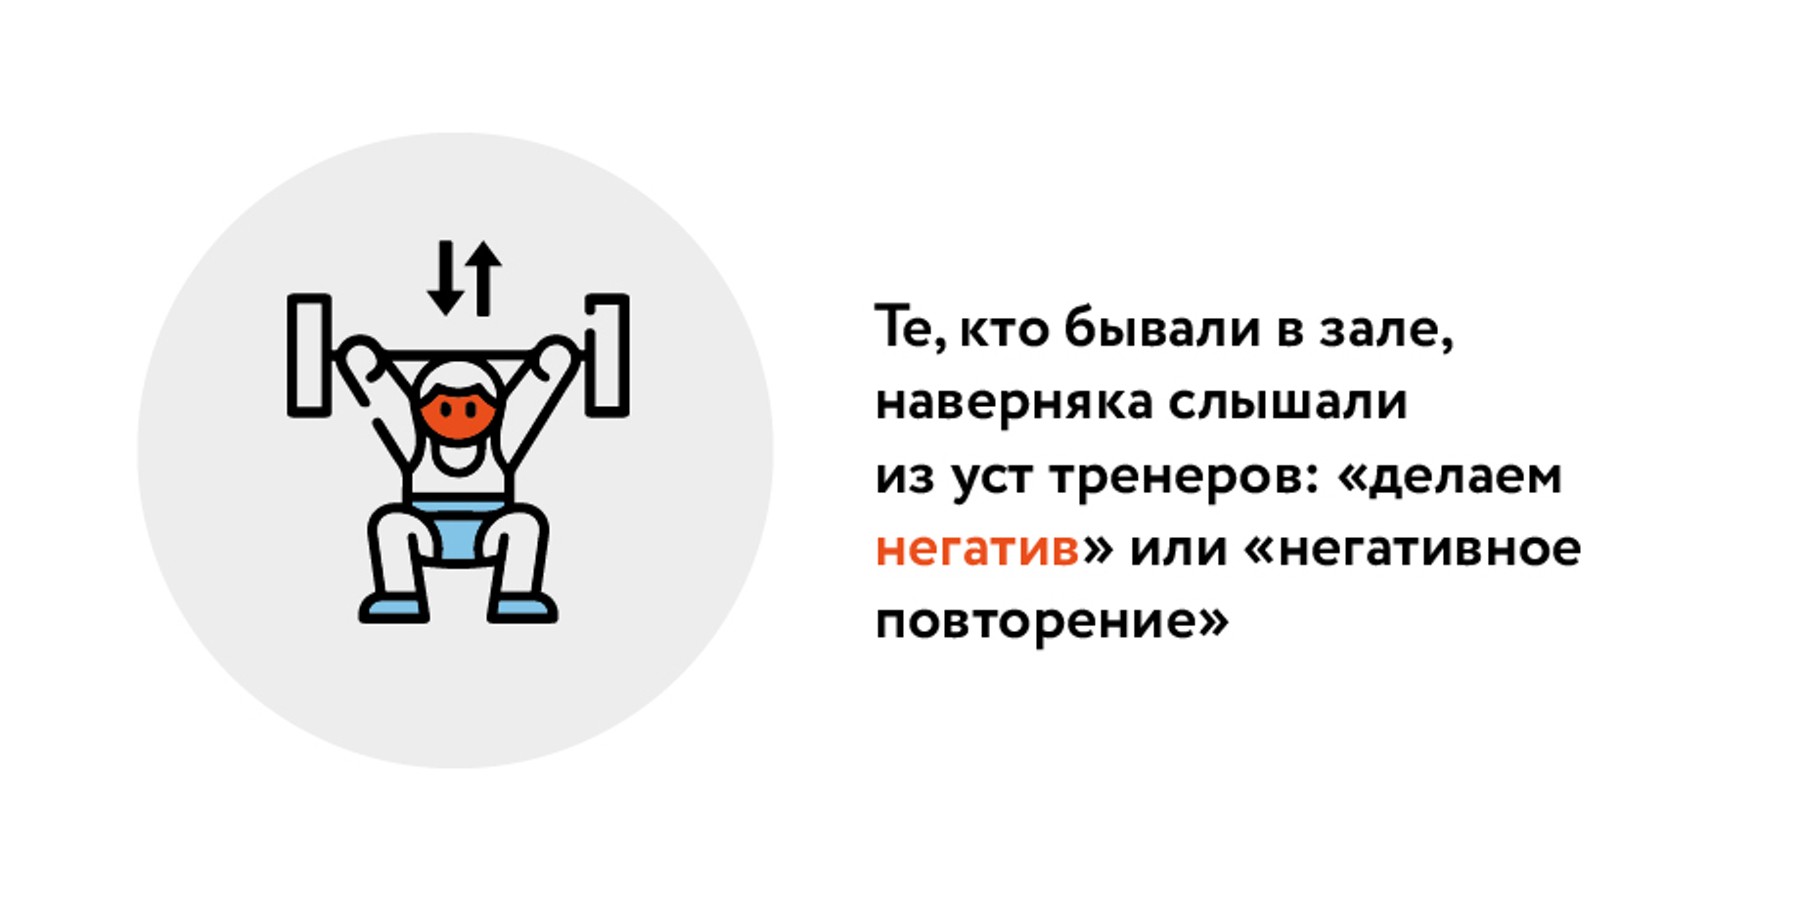 Что такое негативные и позитивные фазы тренировок – Москва 24, 21.09.2019